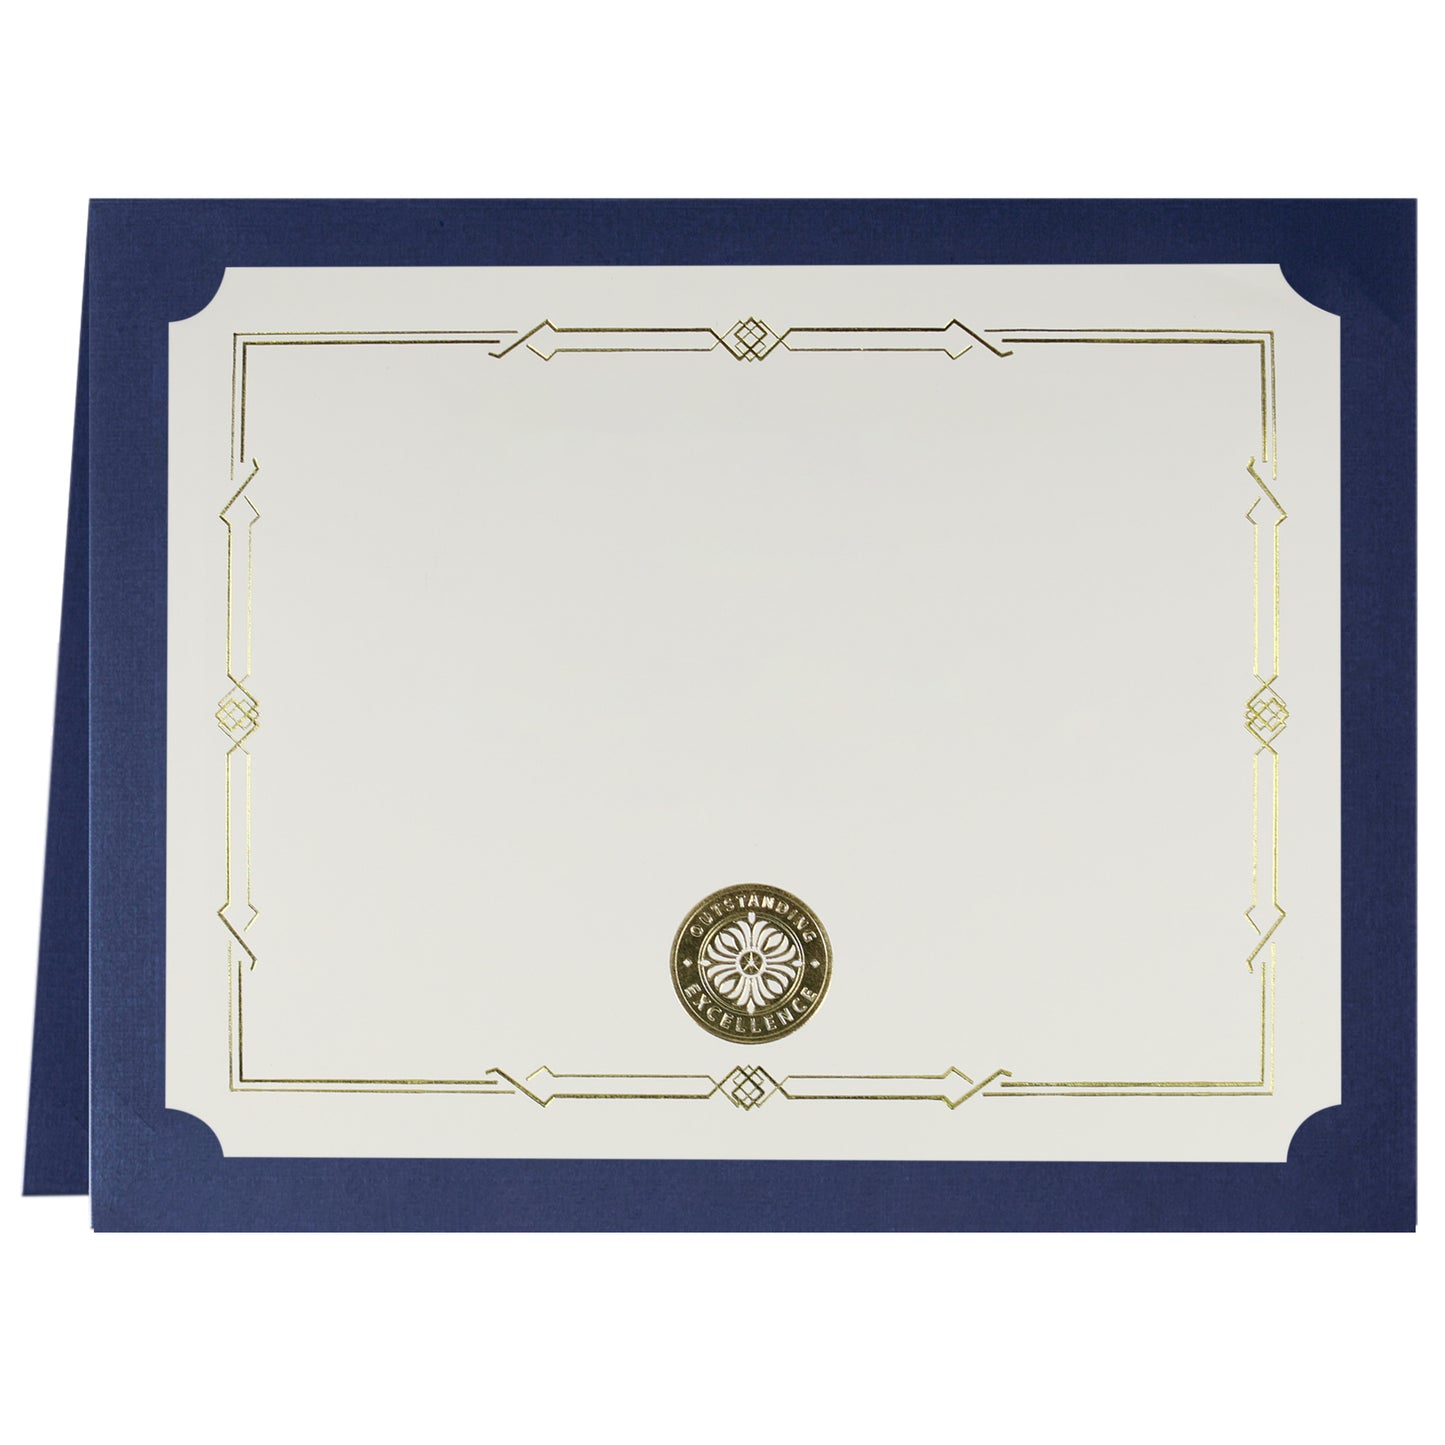 St. James® Porte-certificats/Couvertures de documents/Porte-diplômes, Bleu marine, Bordure en feuille d'or, Finition lin, Paquet de 5, 83803